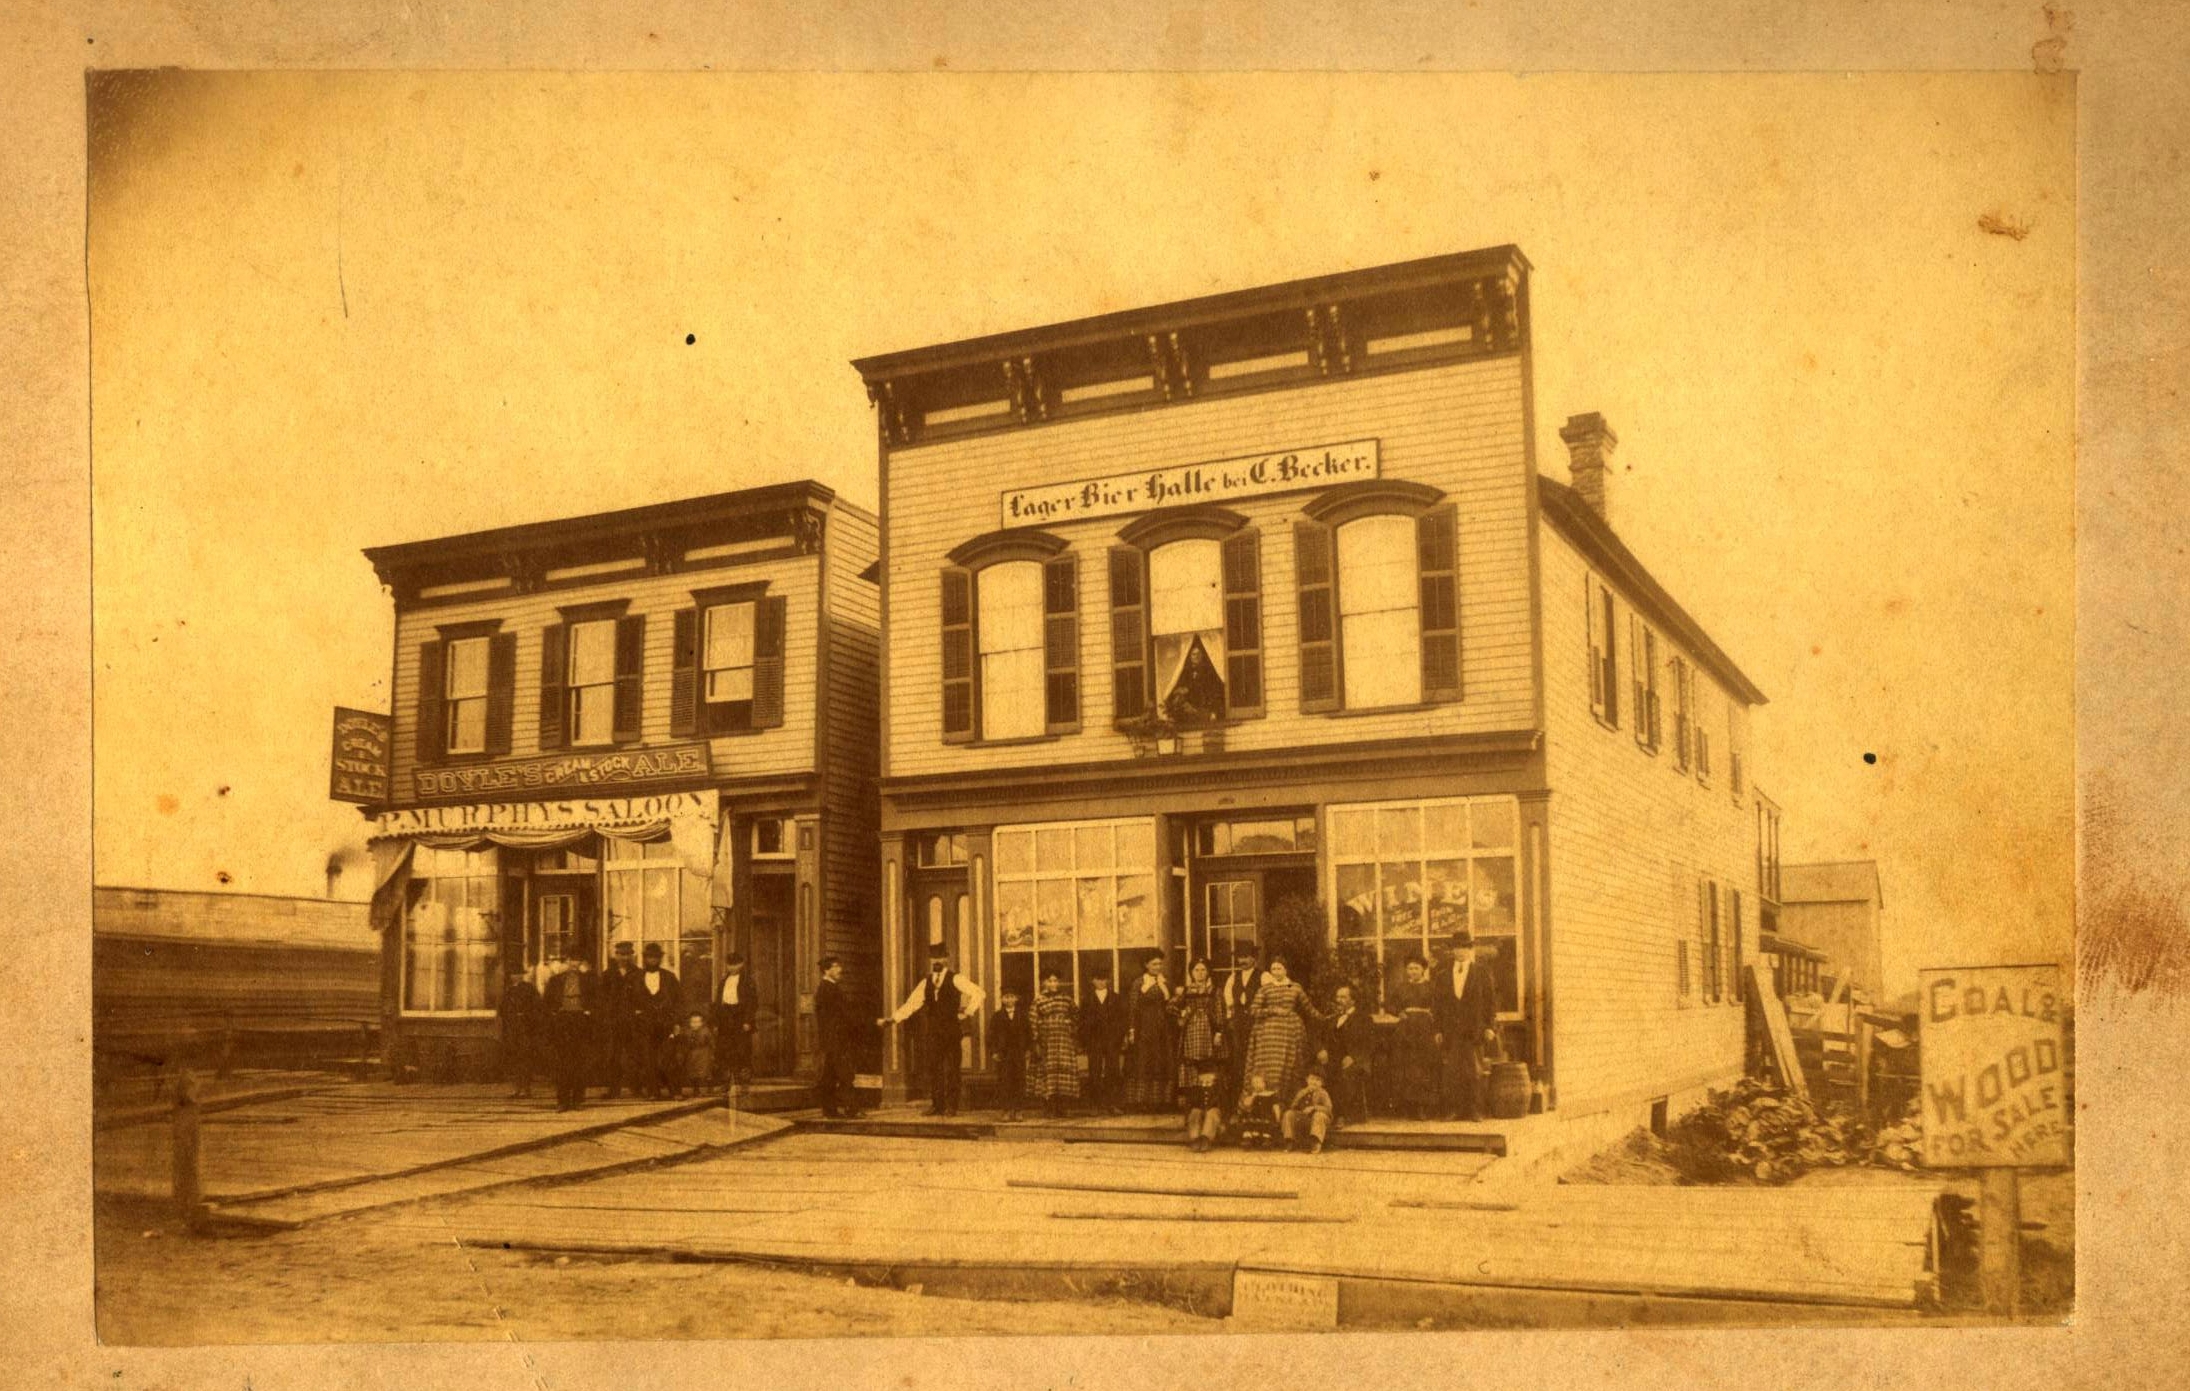 Becker Tavern, Illinois 1880's